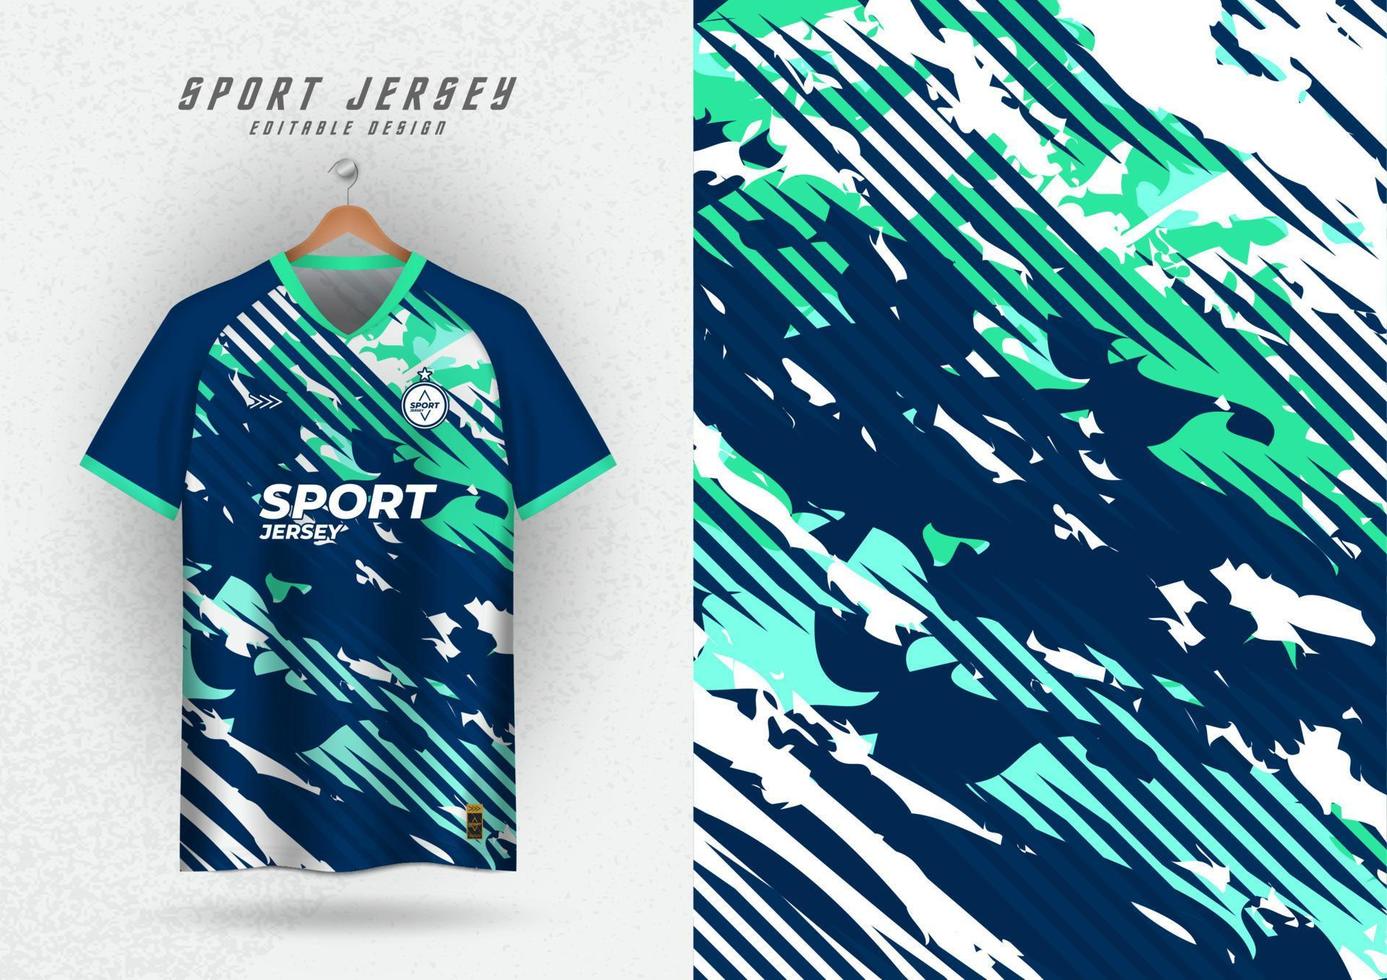 achtergrond voor sport- Jersey, voetbal Jersey, rennen Jersey, racing Jersey, patroon, borstel, groen vector